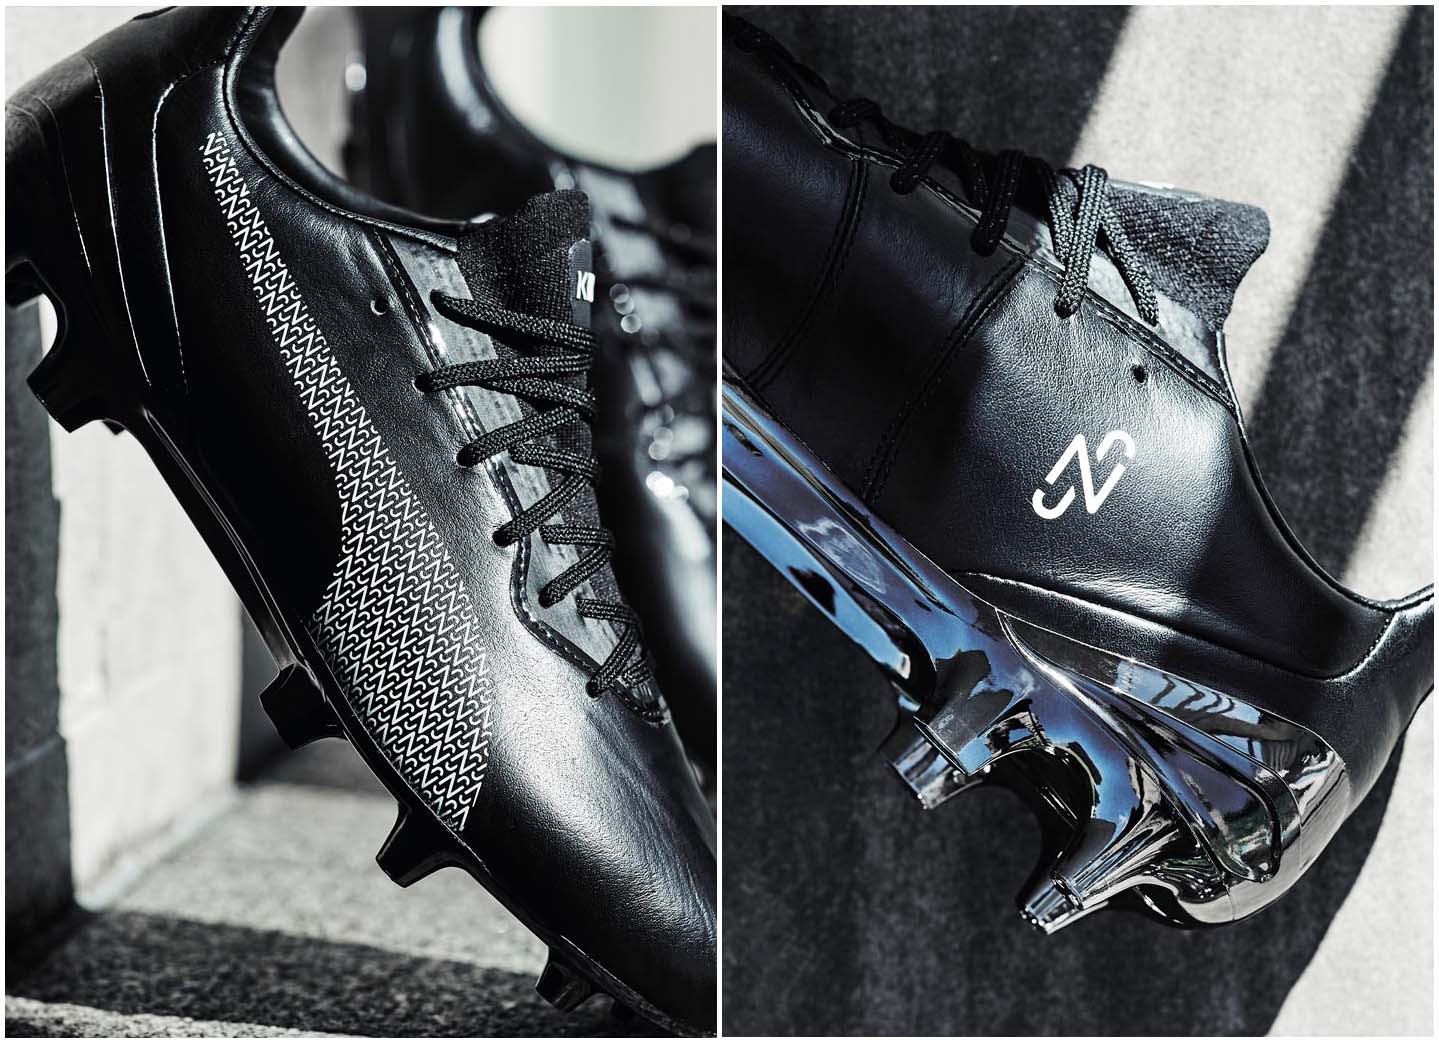 Thiết kế đơn giản của giày thửa riêng Puma Neymar với logo chữ N cách điệu